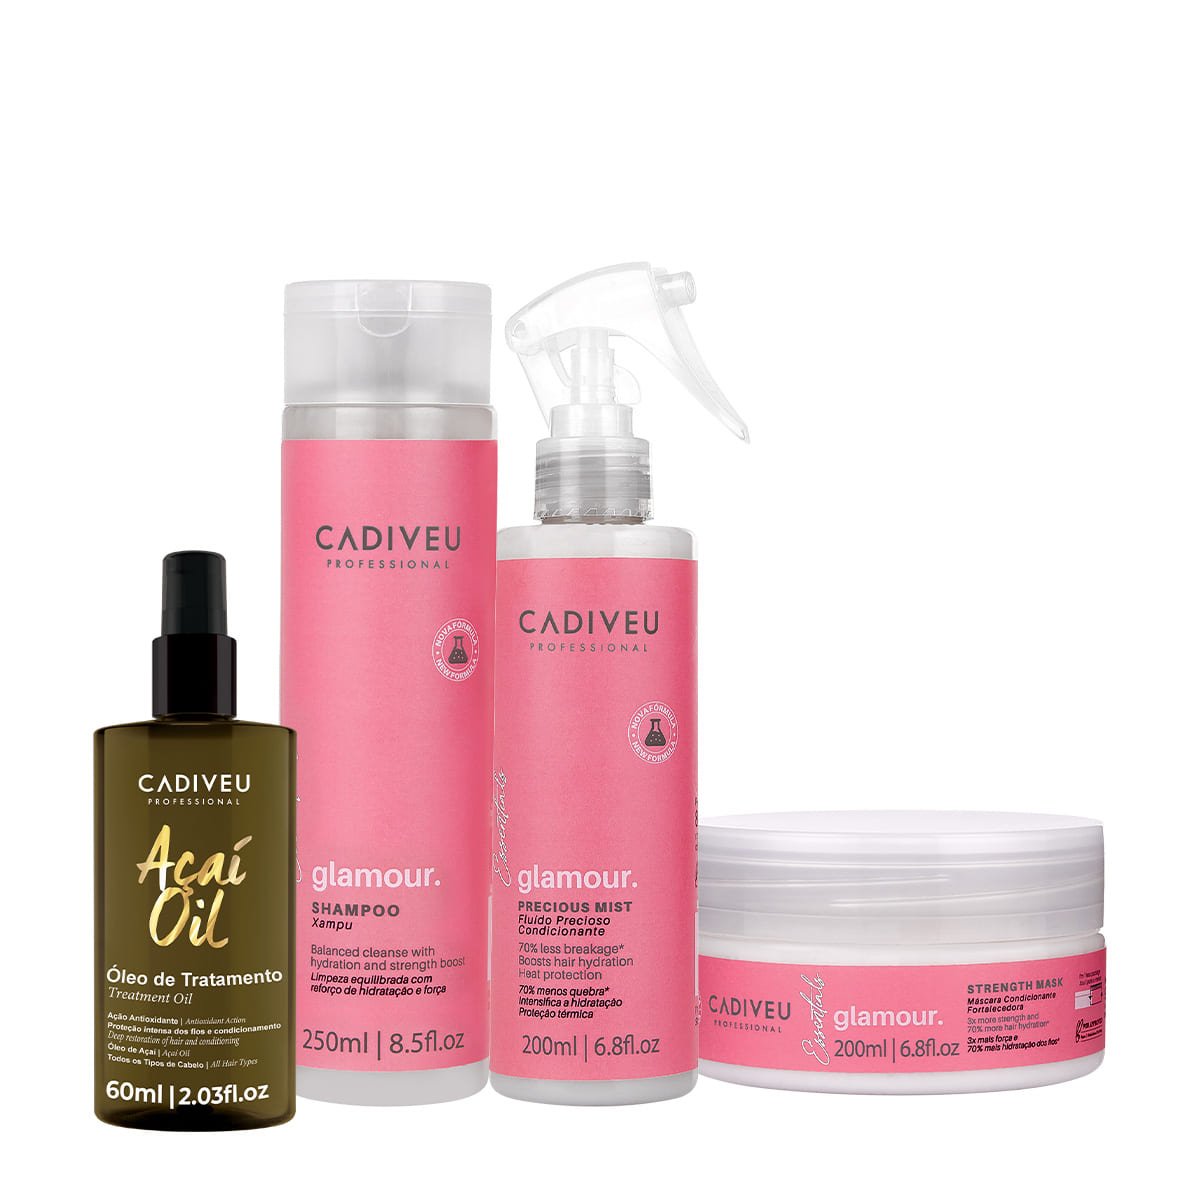 Kit Cadiveu Professional Essentials Glamour Shampoo Mascara Fluido e Acai Oil (4 produtos)